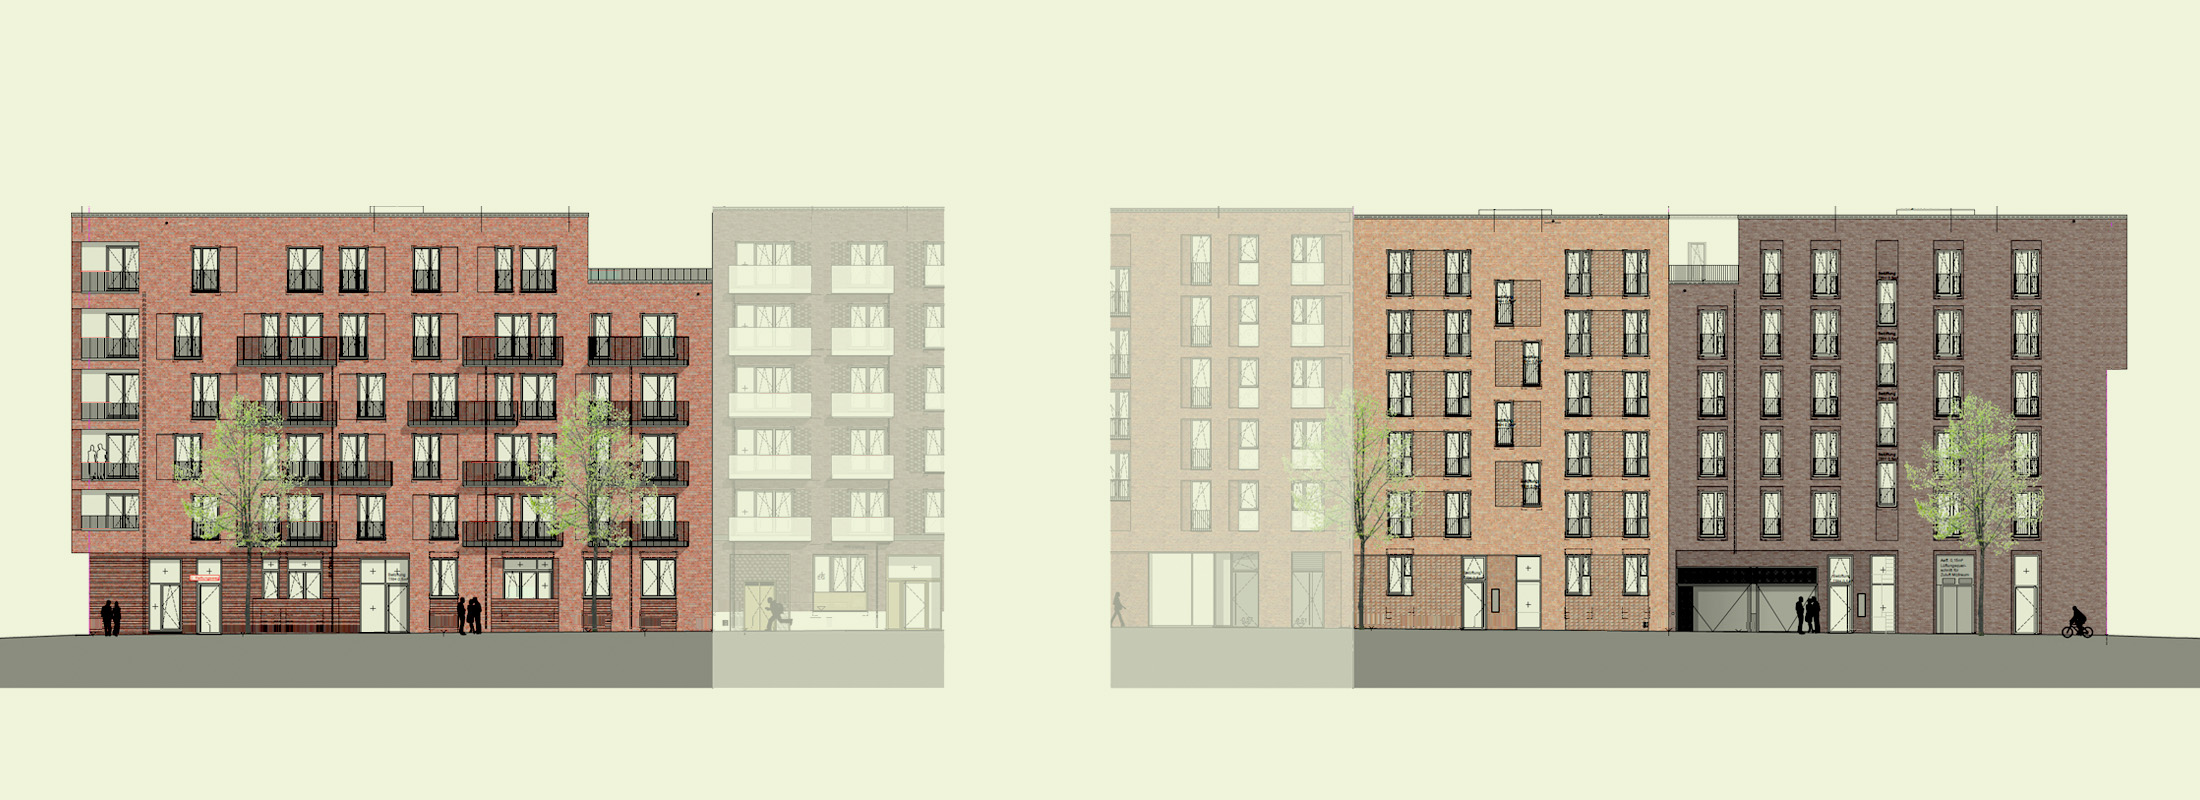 Architekturzeichnung - Diese Zeichnung zeigt ein Referenzprojekt in der Mitte Altona